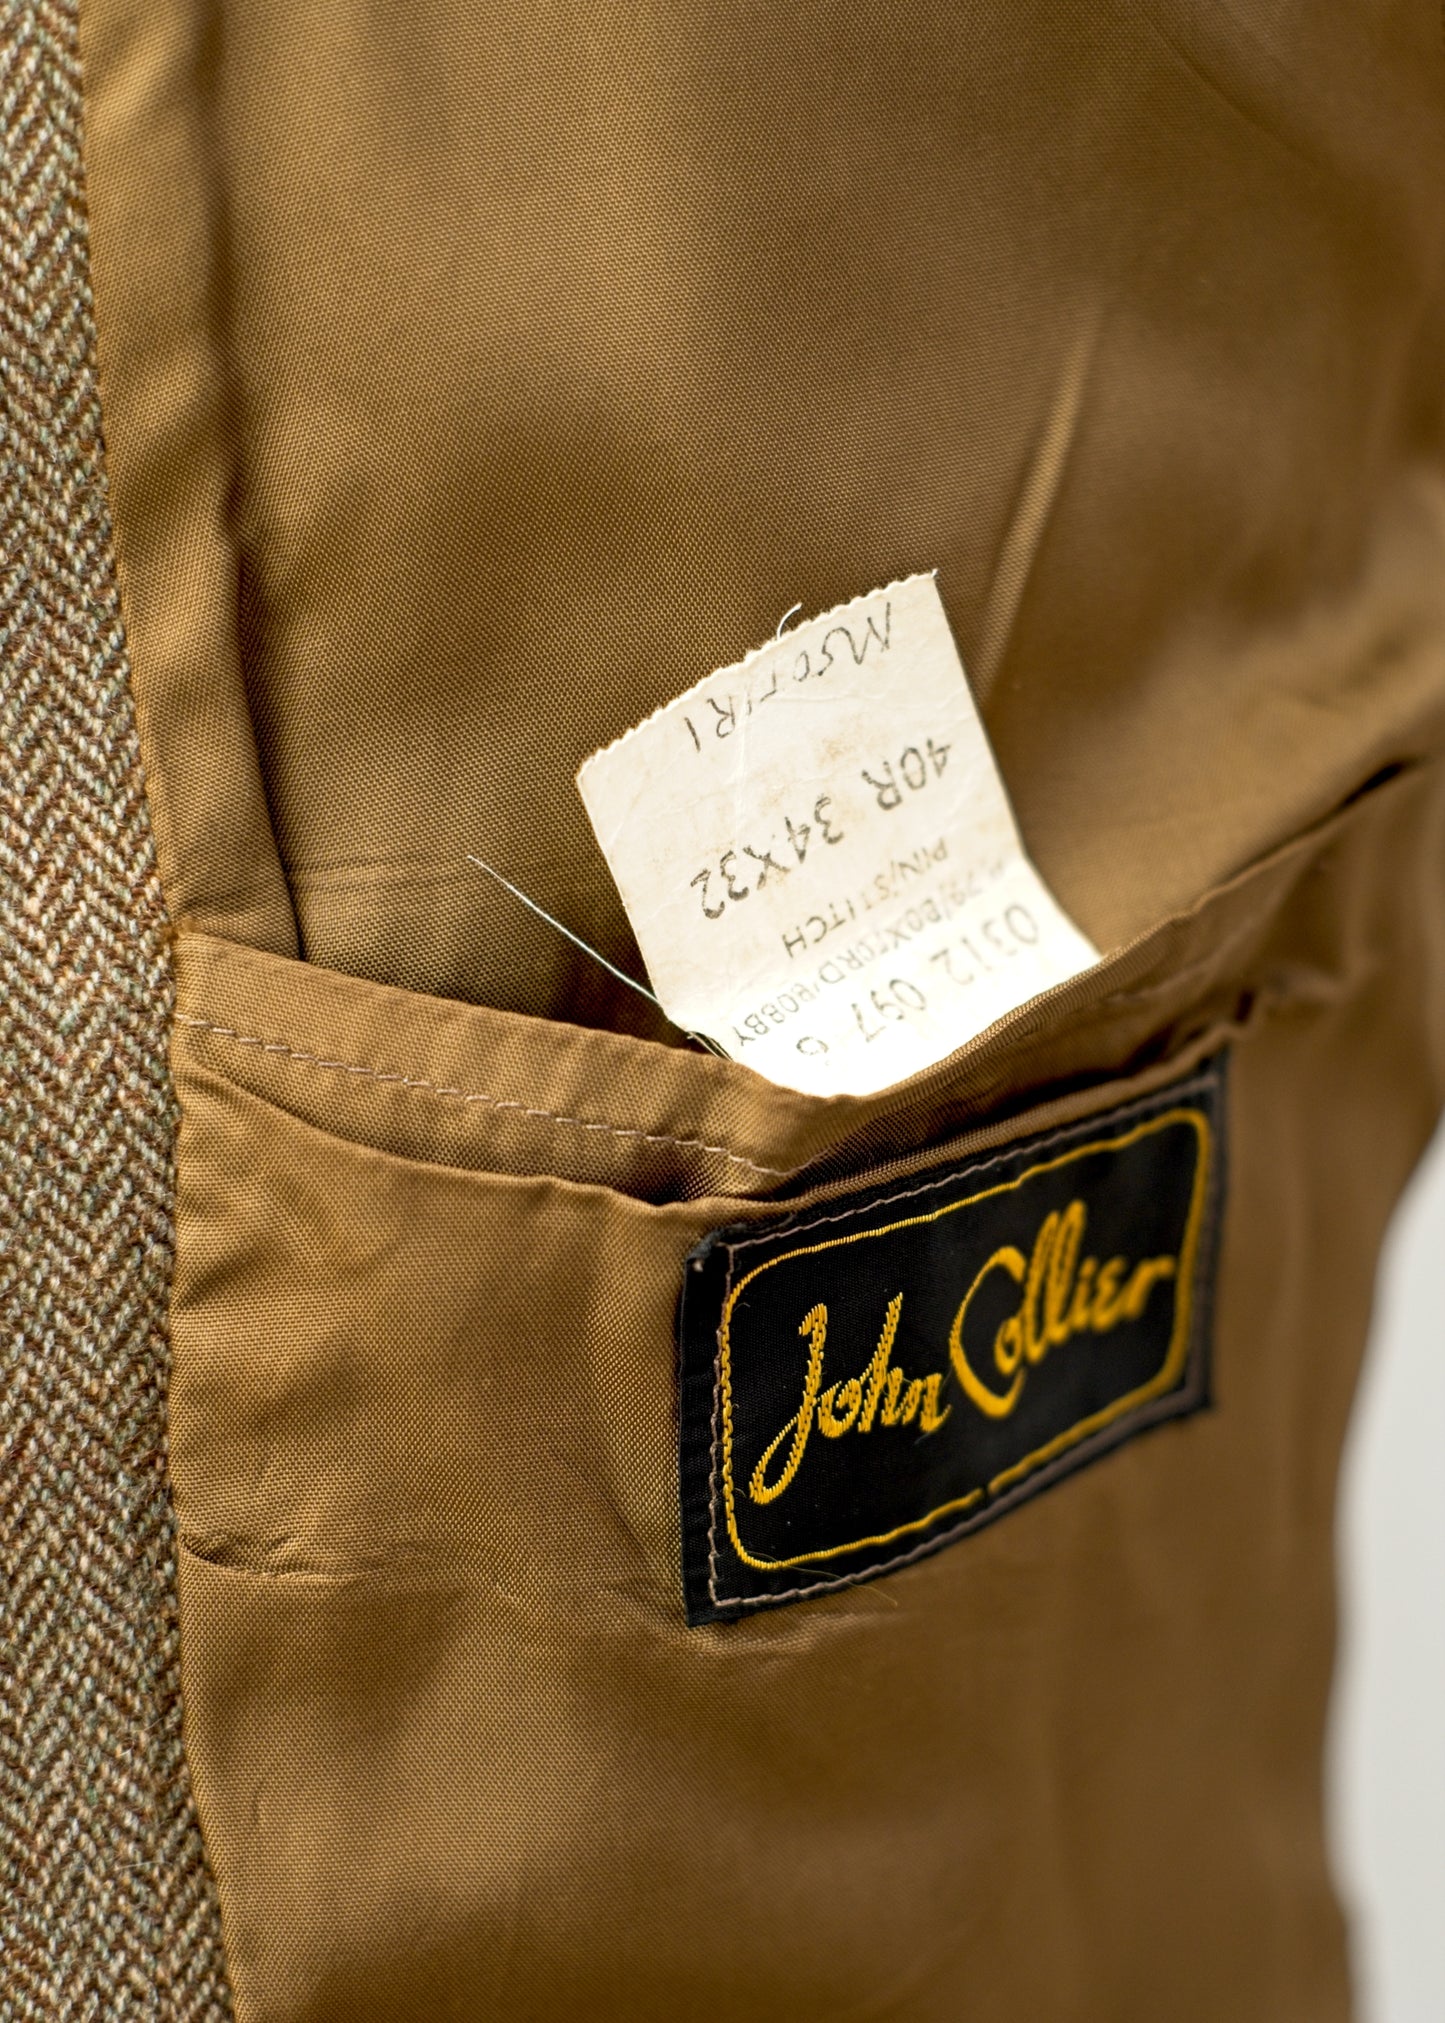 Vintage 60s Brown Herringbone Tweed Jacket • John Collier